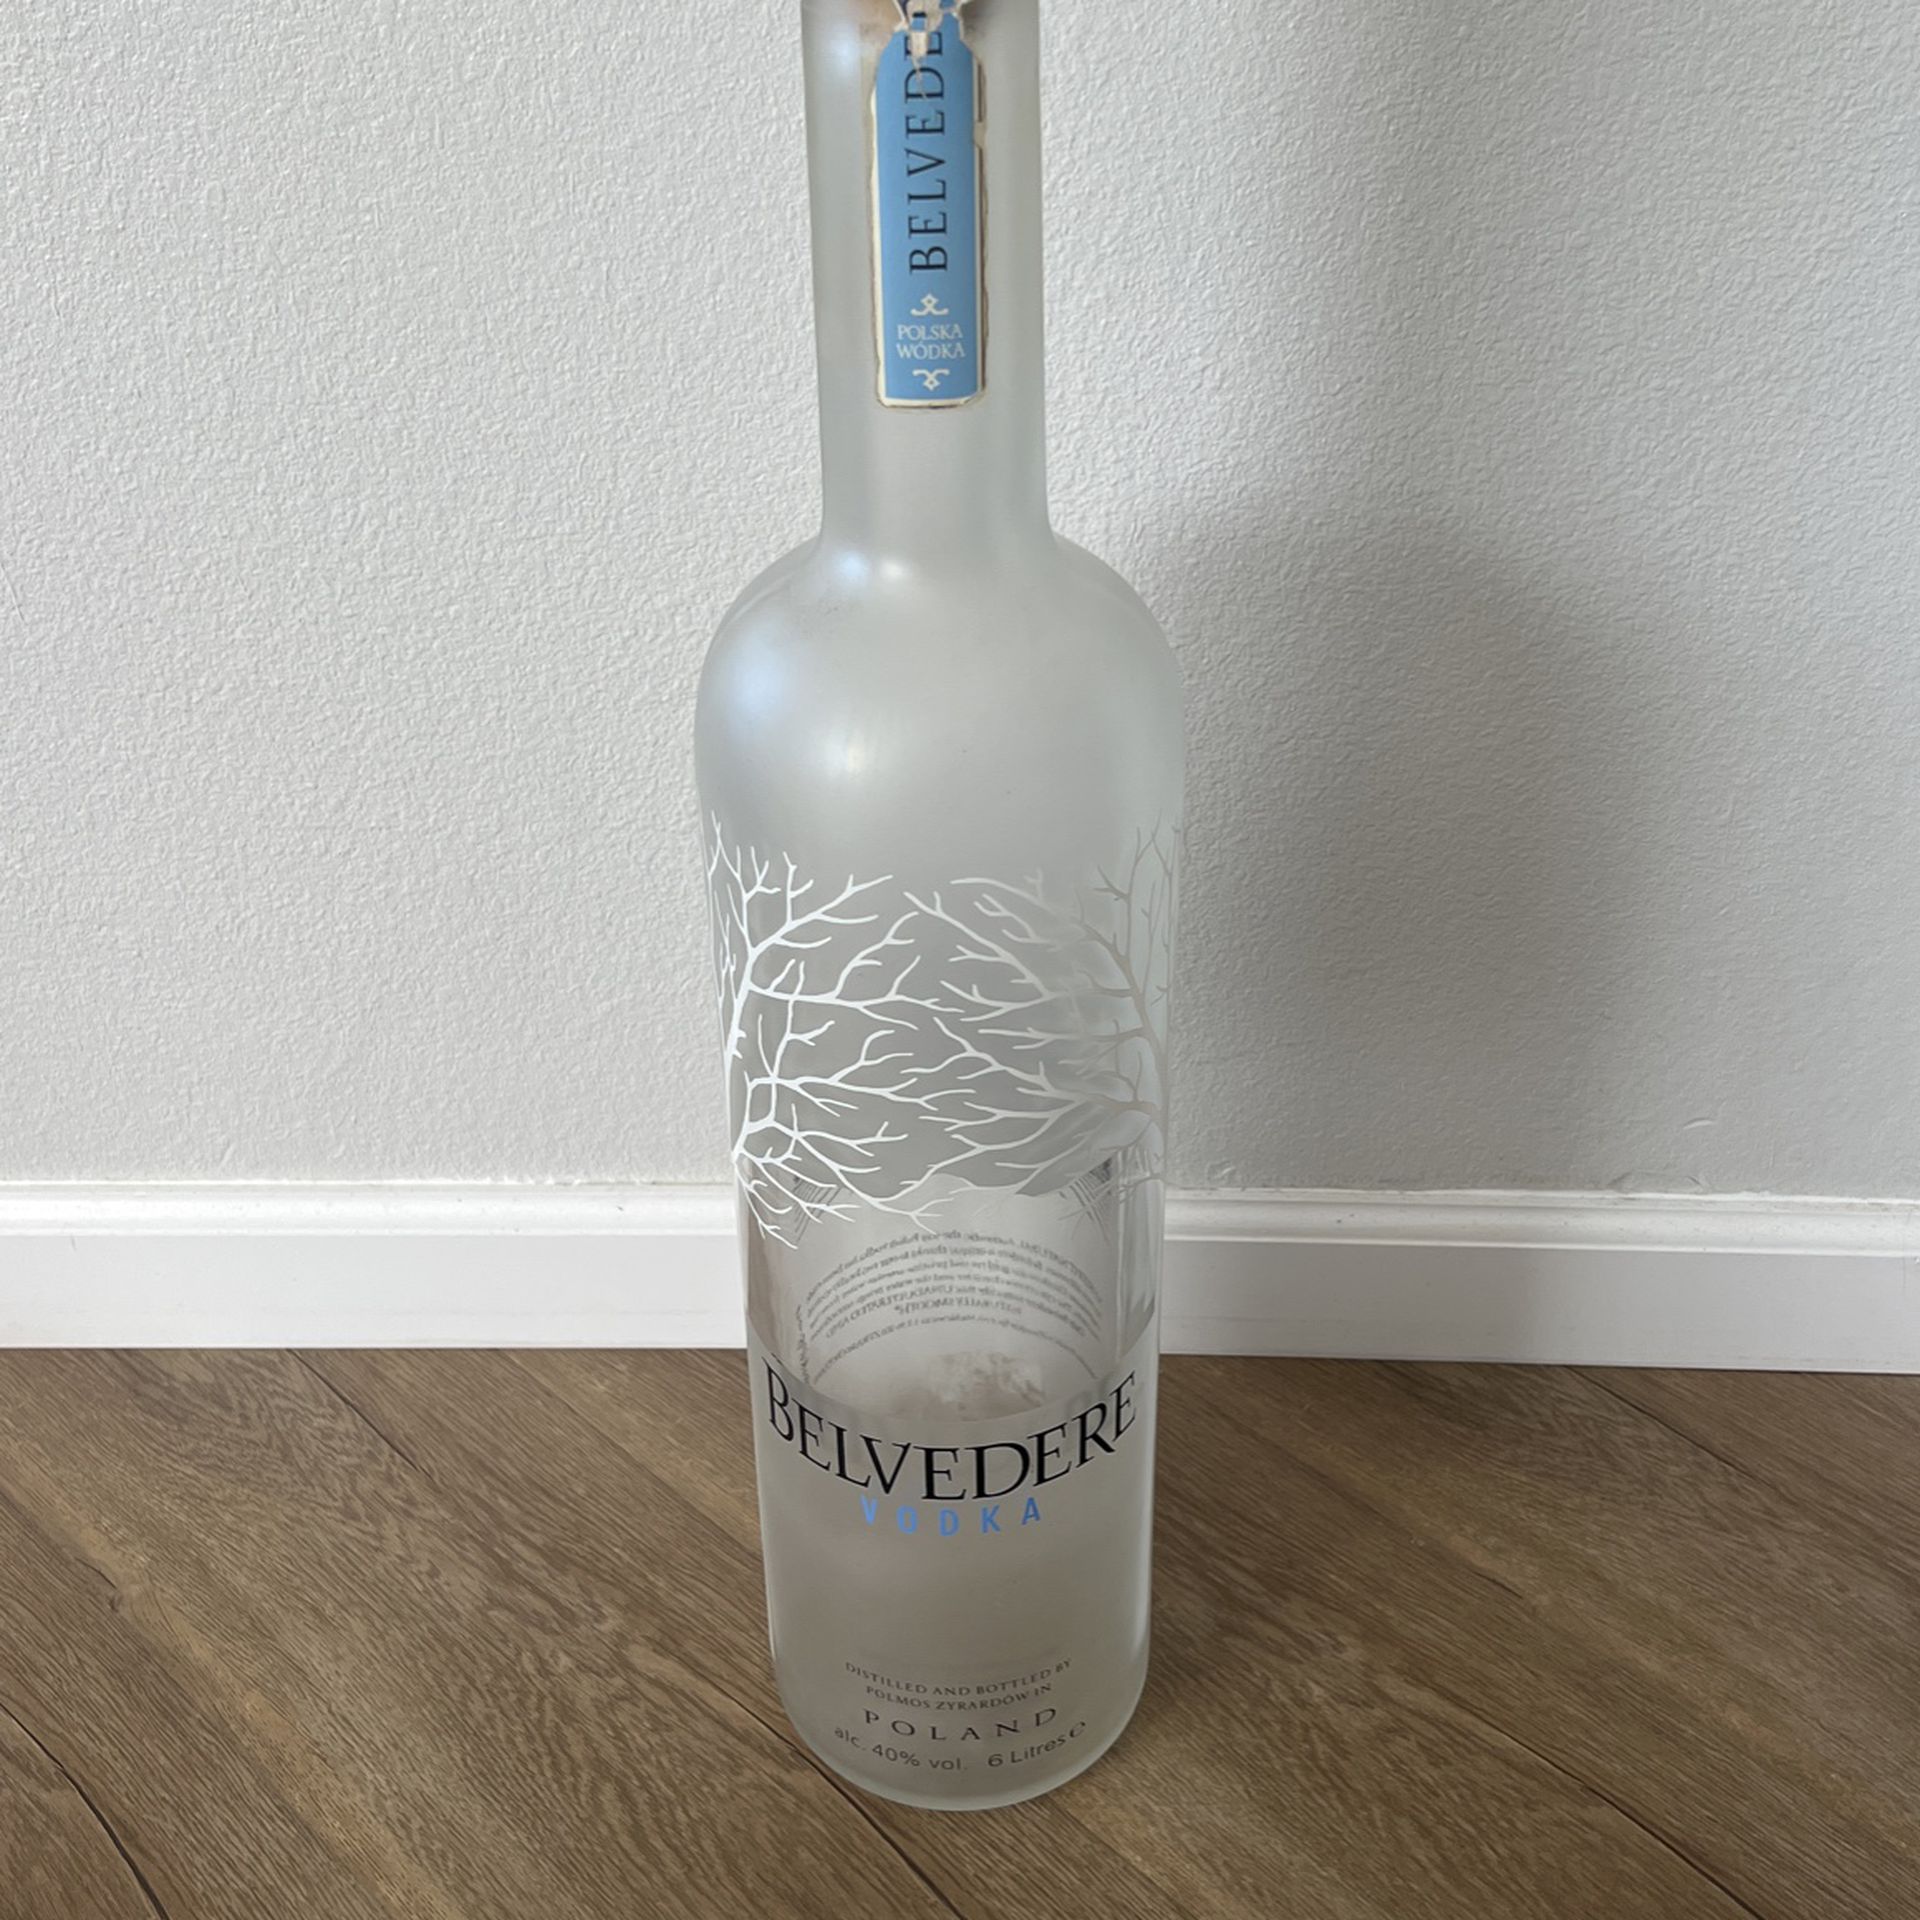 Belvedere Vodka 6L Bottle